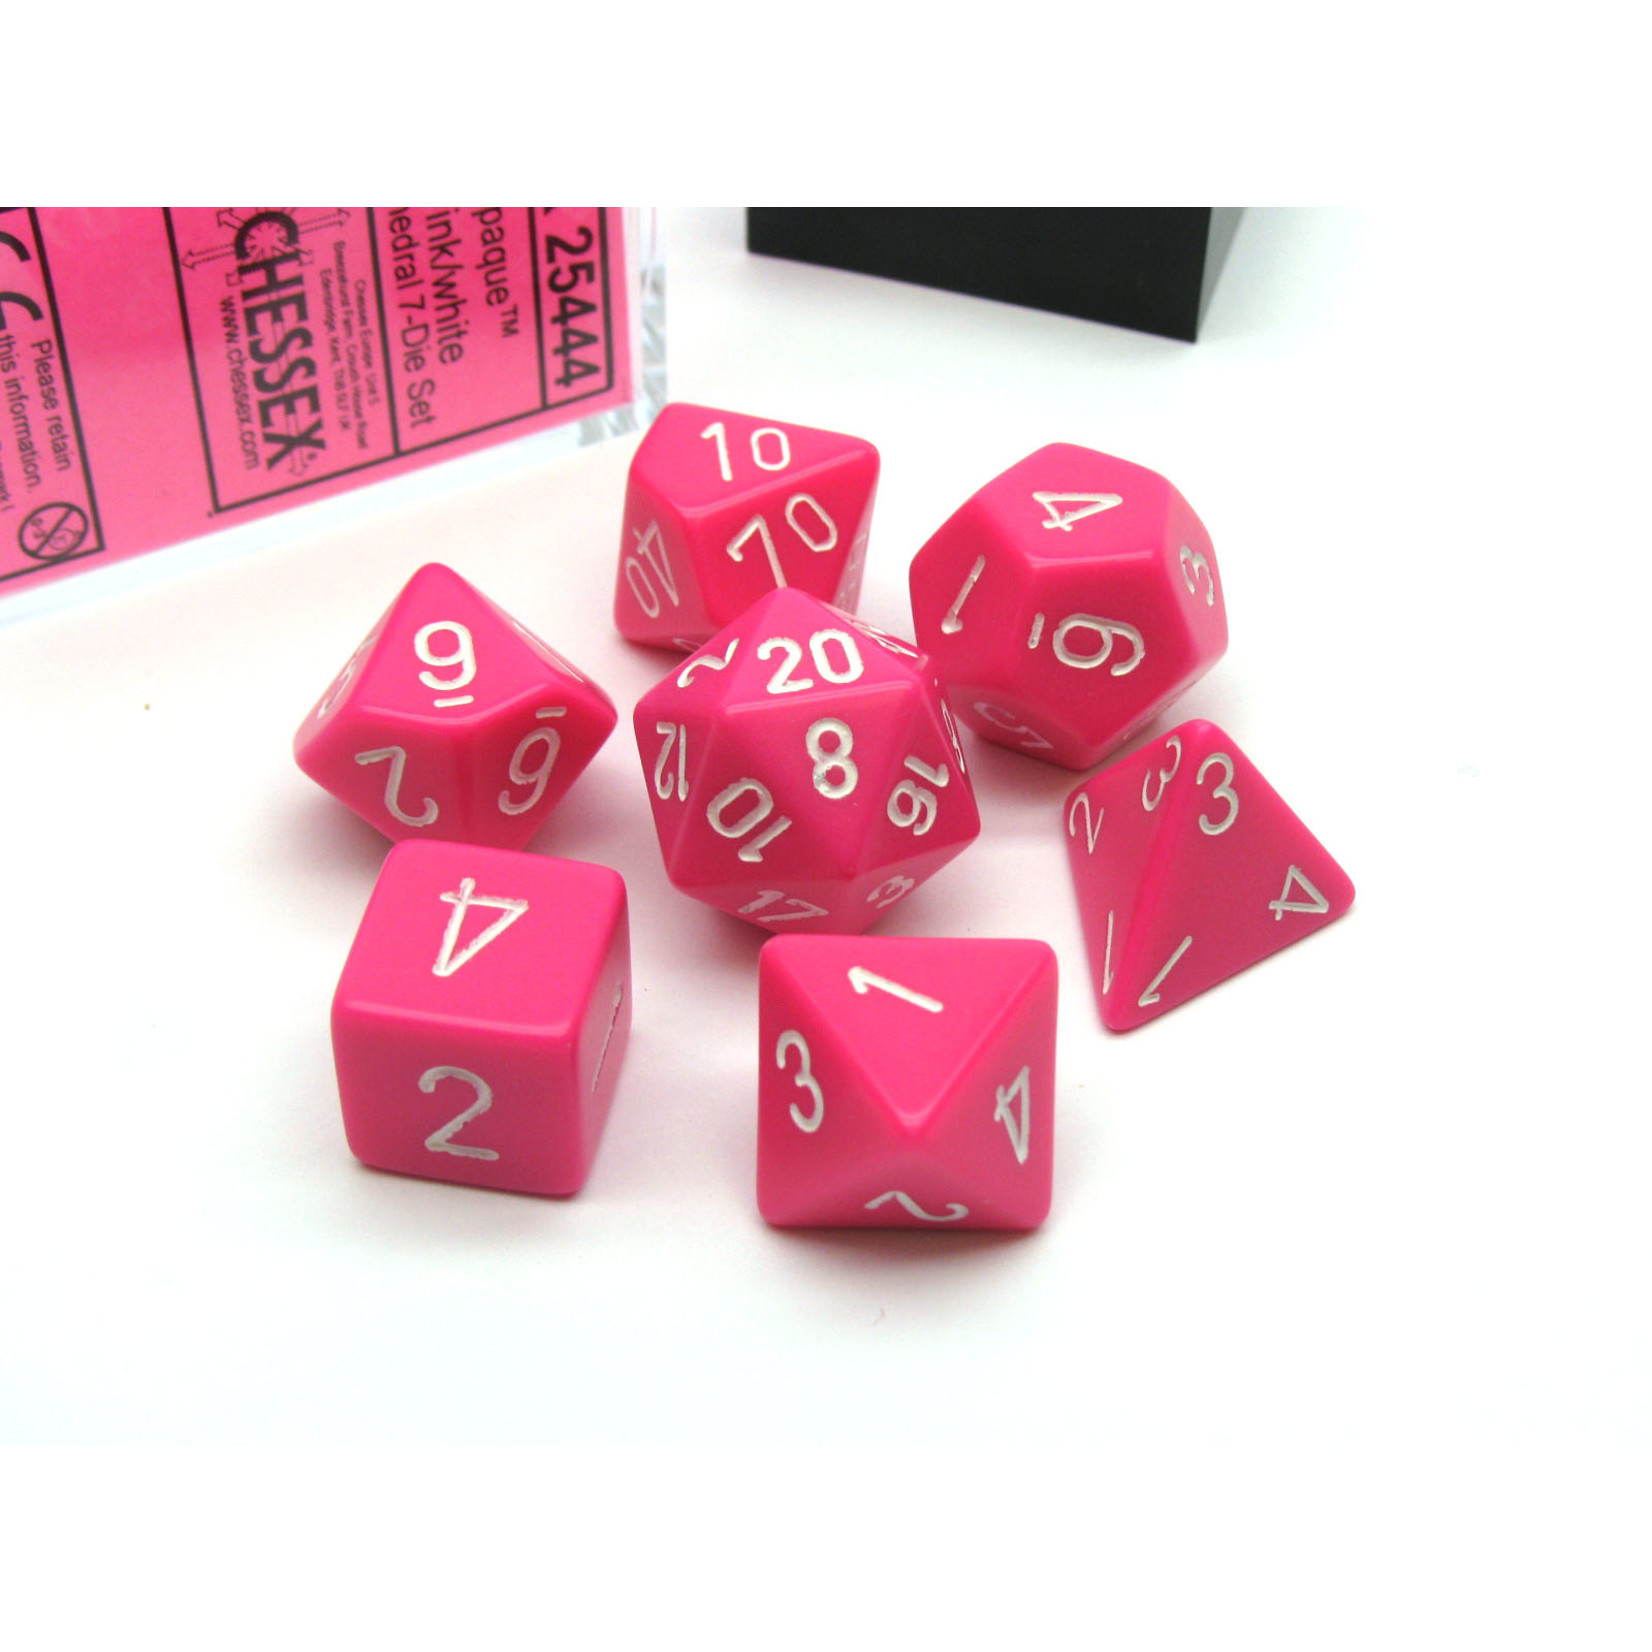 Chessex Opaque Pink/White 7 die set